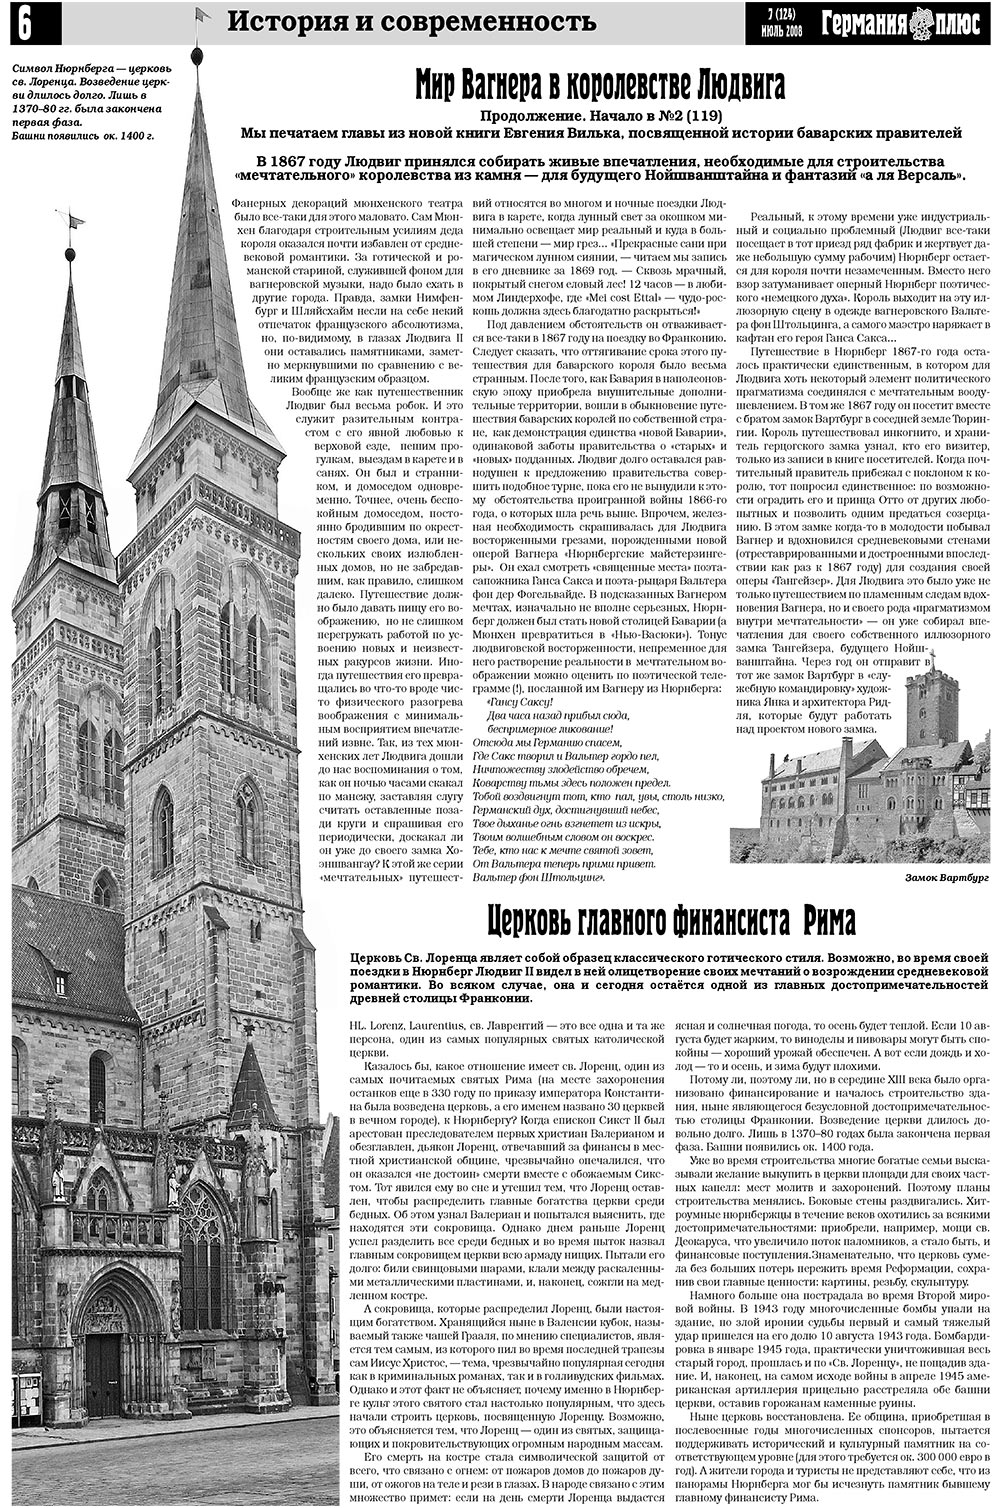 Германия плюс (газета). 2008 год, номер 7, стр. 6